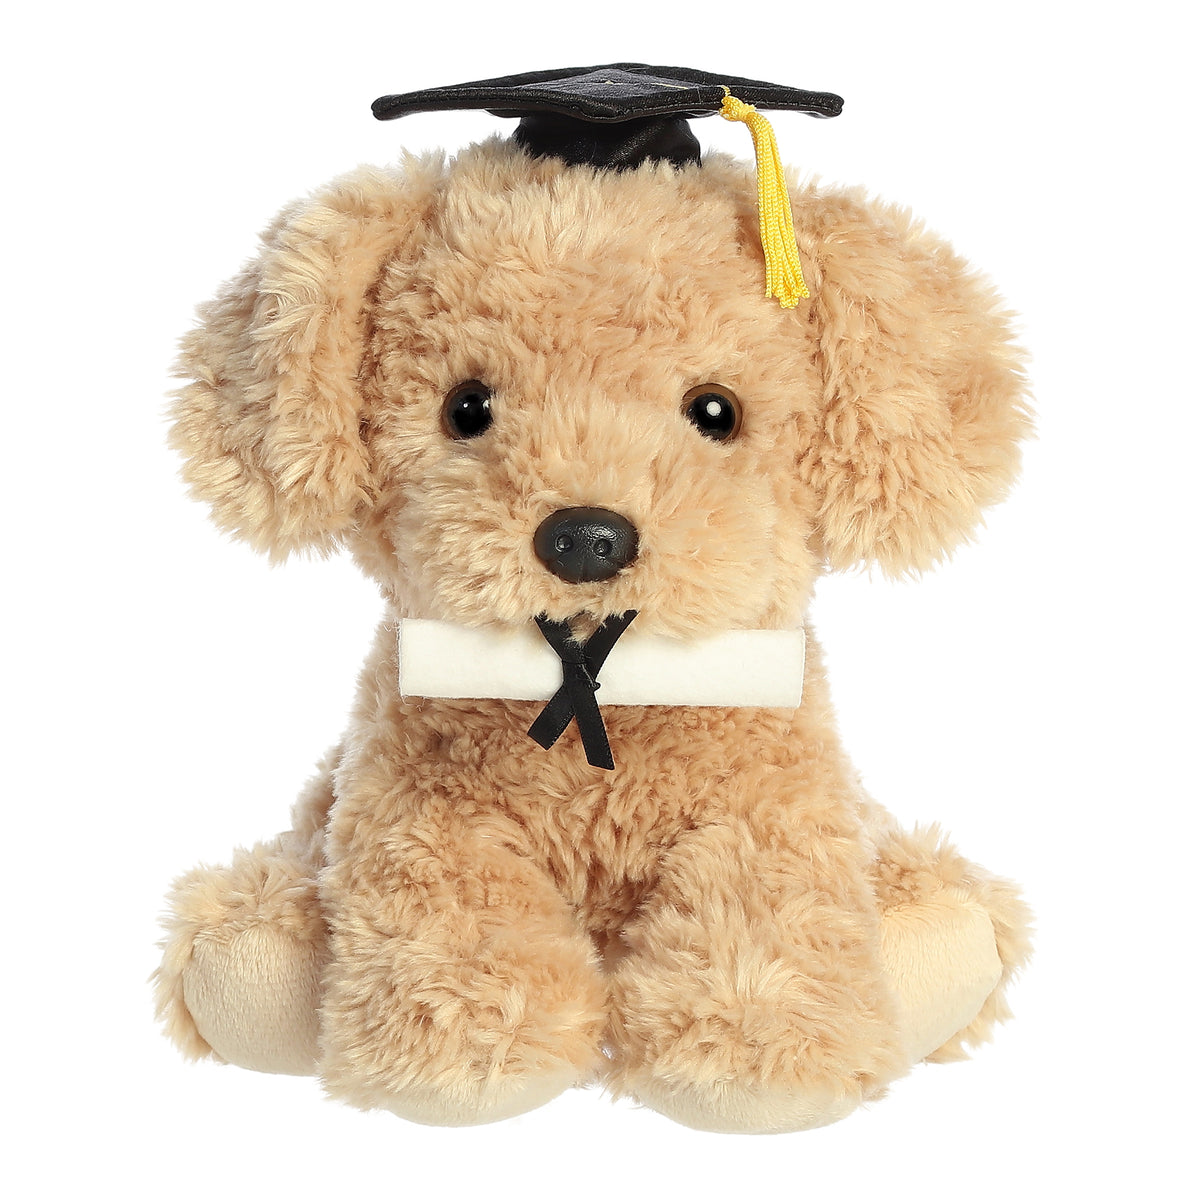 Aurora Graduation Pup Plush in cap, holding diploma, symbolizes academic achievement